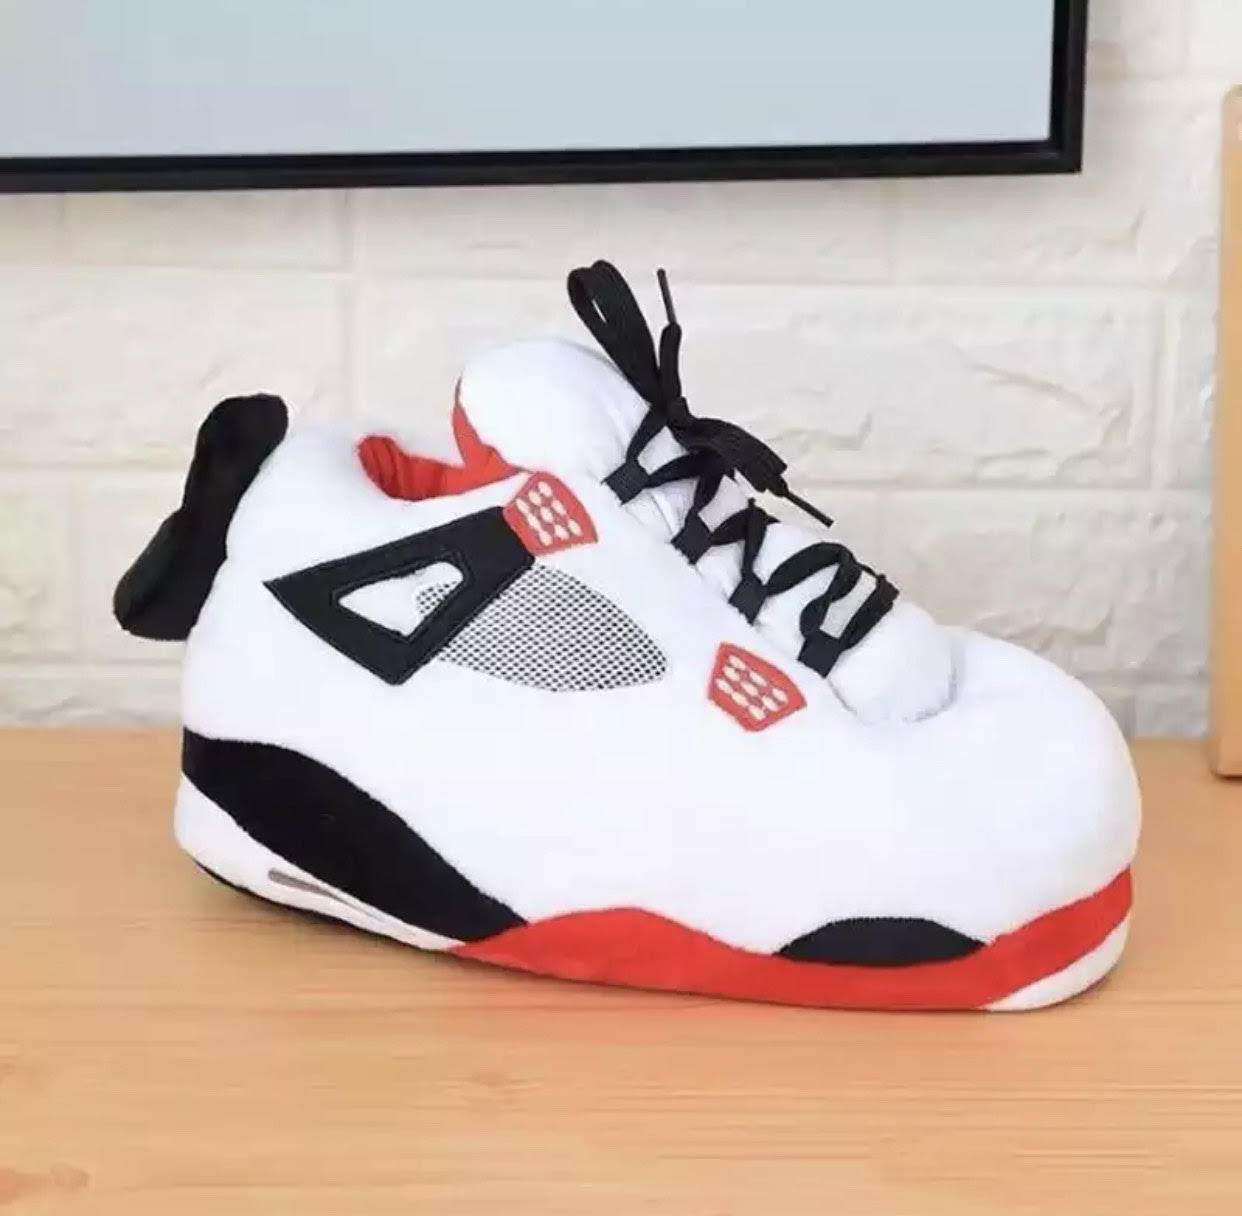 White/Red Jordan IV Slip-Kicks (One 